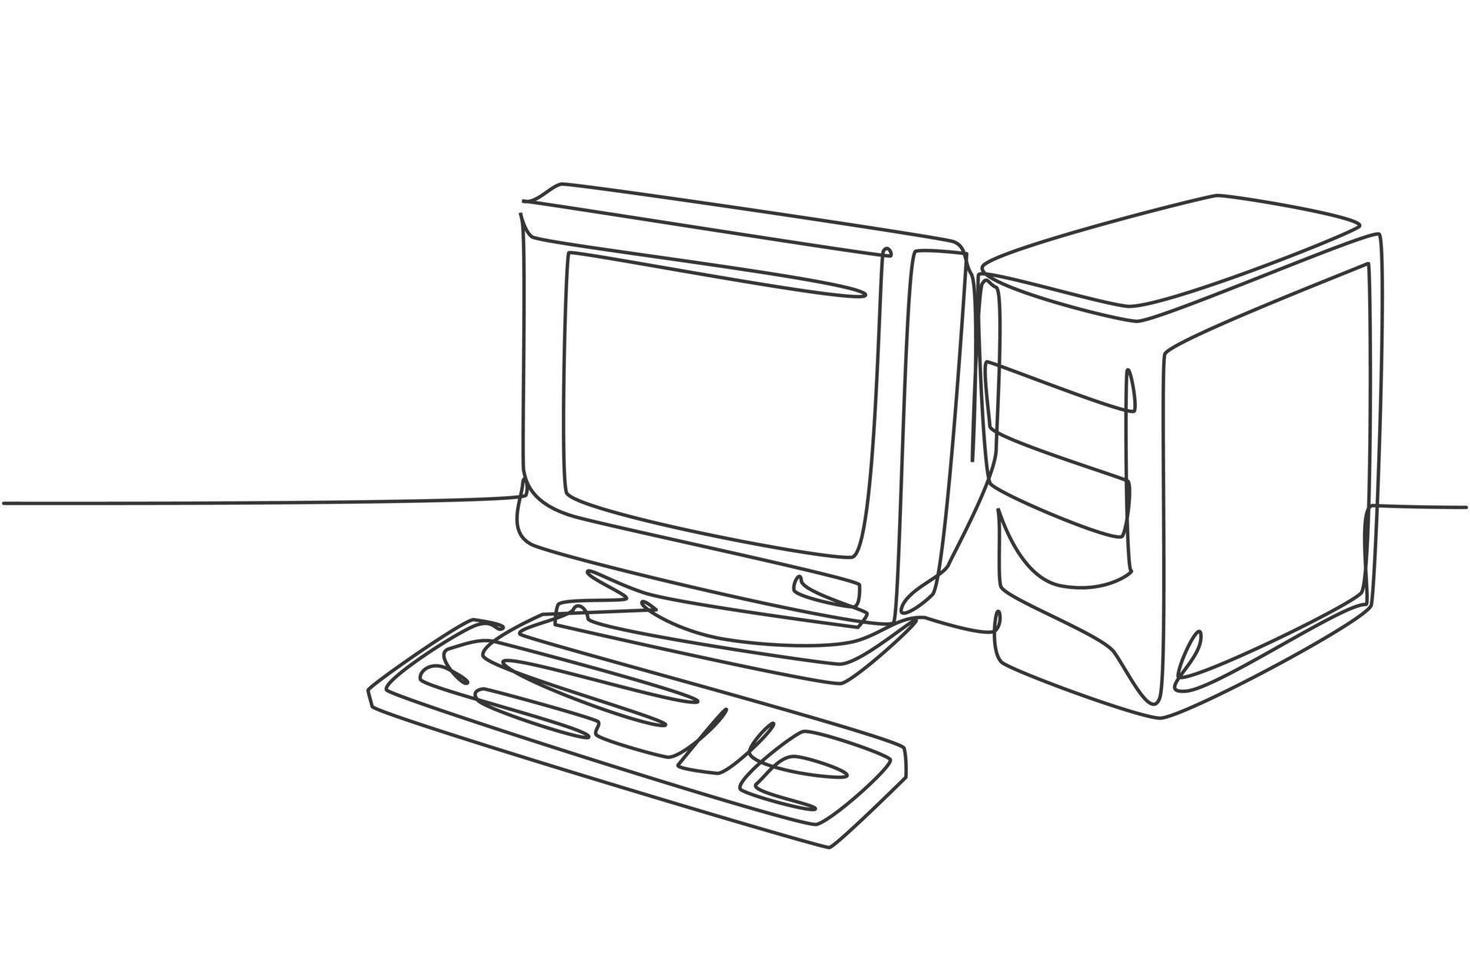 einzelne durchgehende Strichzeichnung der Retro-alten klassischen PC-Prozessoreinheit. Vintage-CPU mit analogem Monitor und Tastatur-Element-Konzept eine Linie zeichnen Design-Vektor-Illustration-Grafik vektor